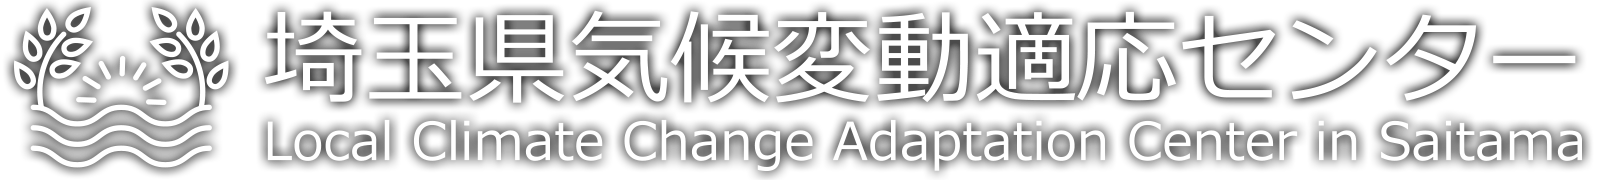 埼玉県気候変動適応センターロゴ